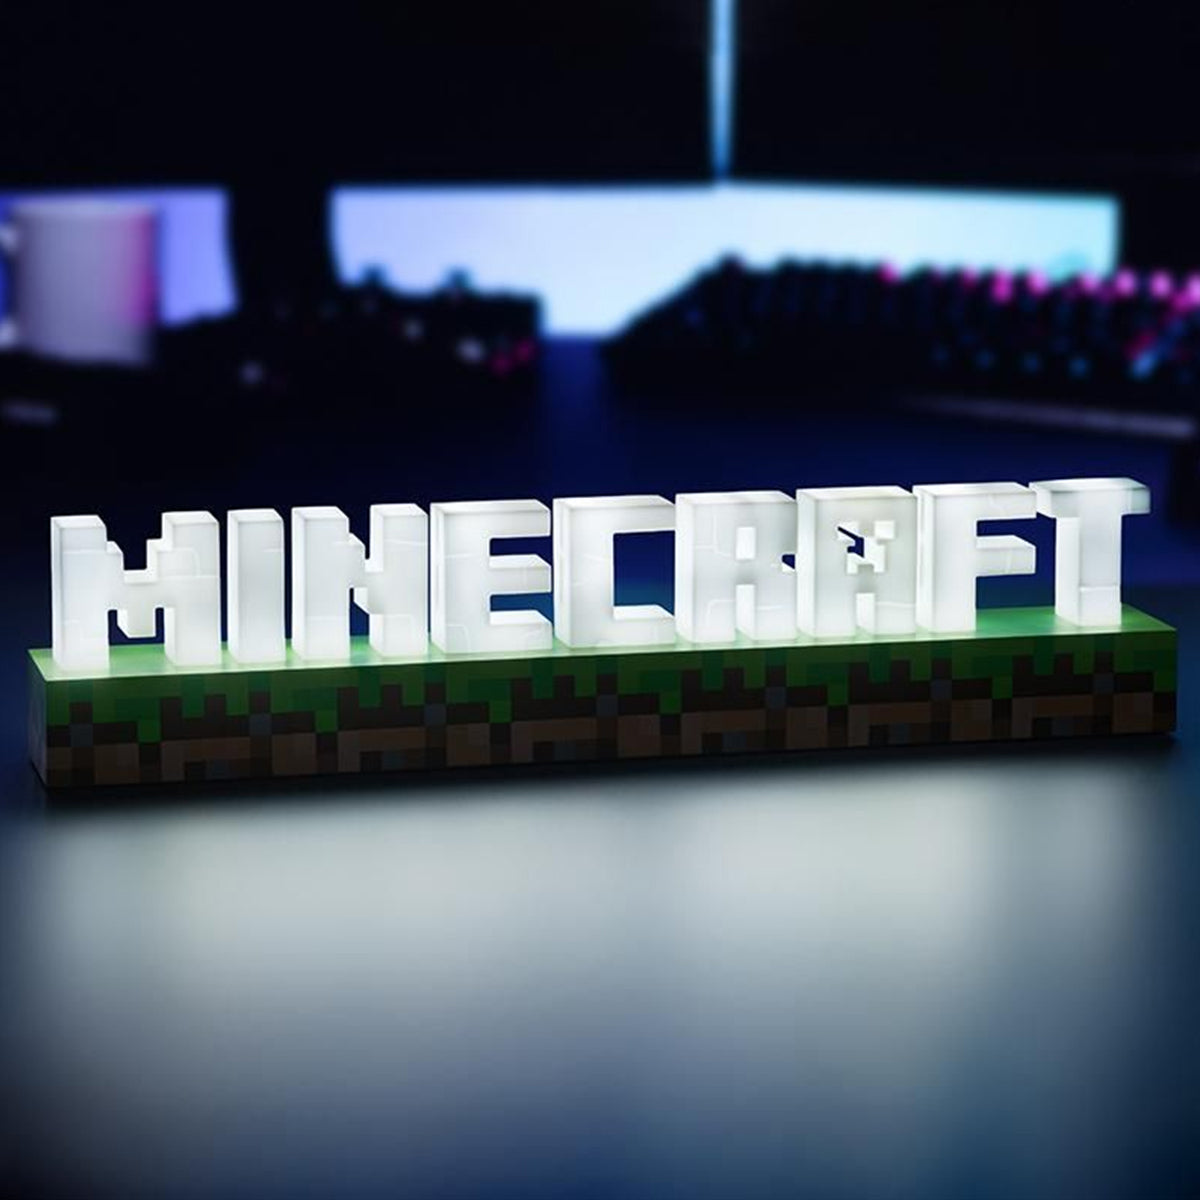 Lámpara Minecraft 16 bloques Minecraft